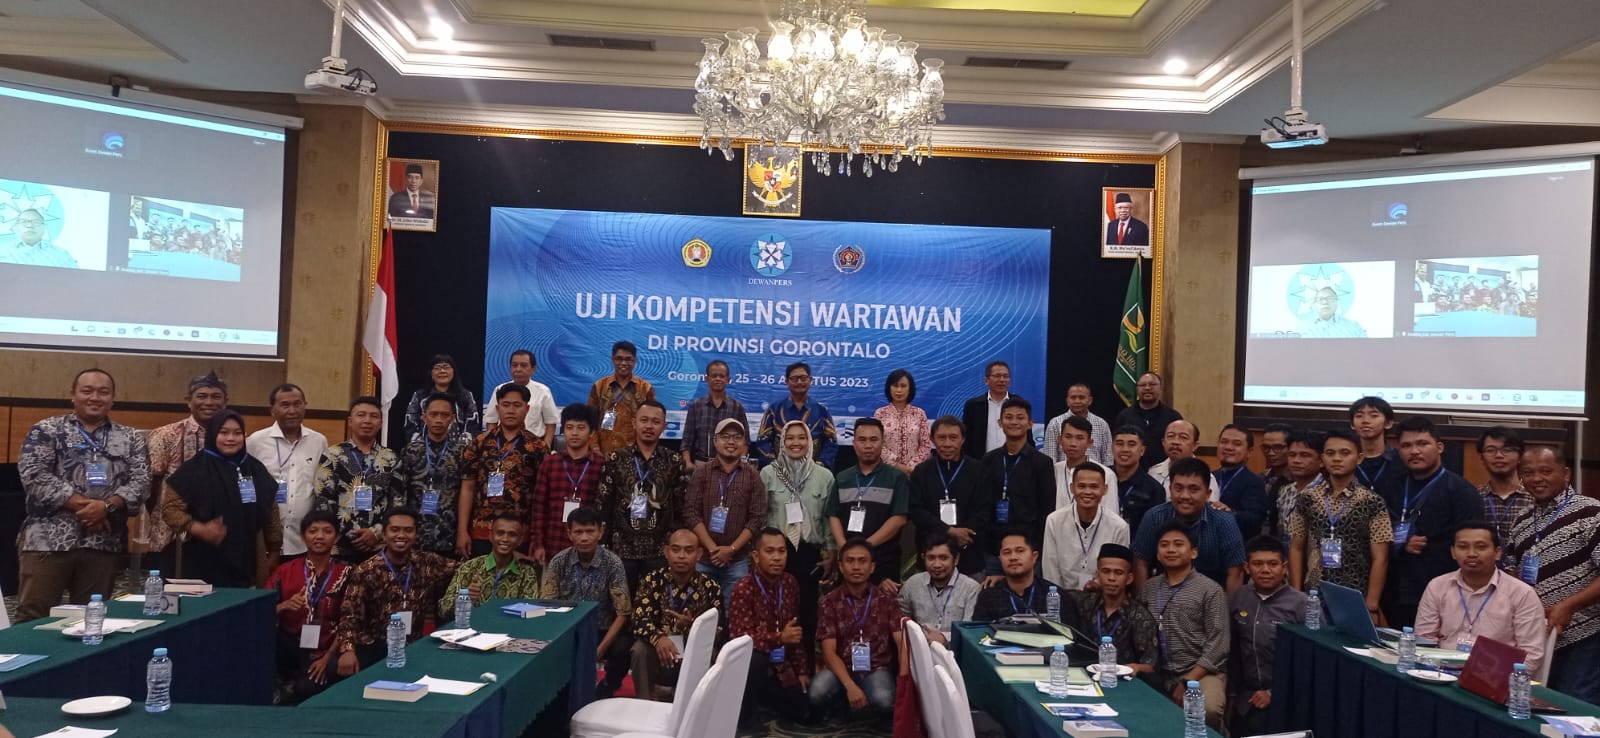 Ketua Umum PJS : Anggota se-Indonesia Wajib Mewujudkan Visi PJS